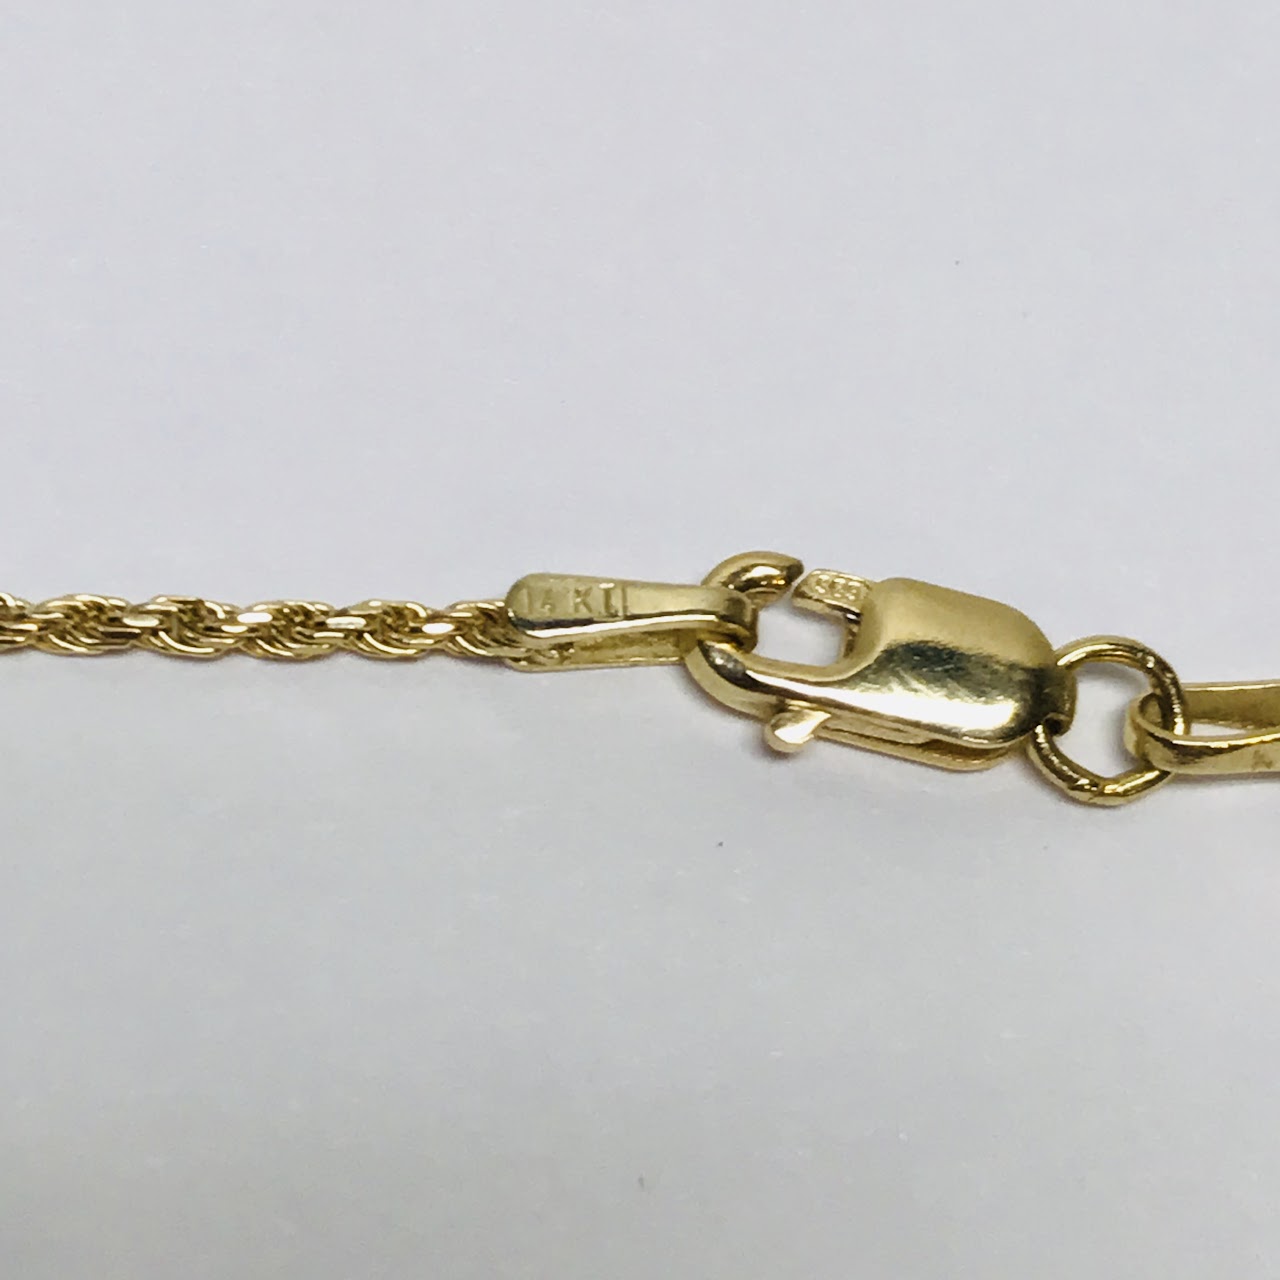 14k Gold Filligree Orb Pendant Necklace